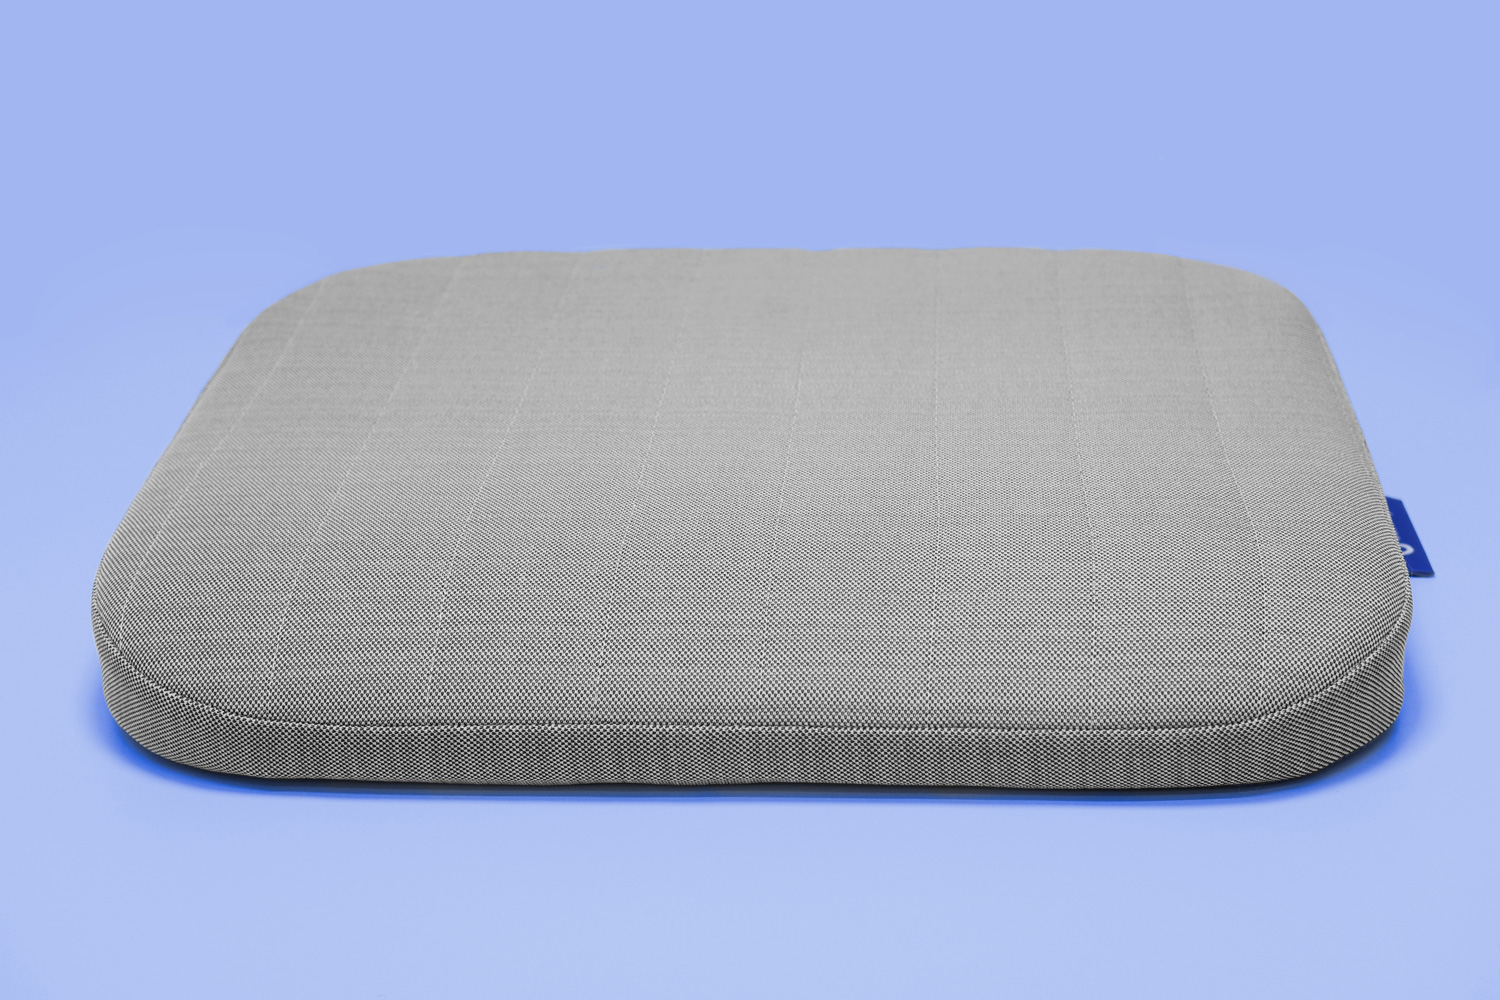 Подушка-кушон Blue Sleep для сидения